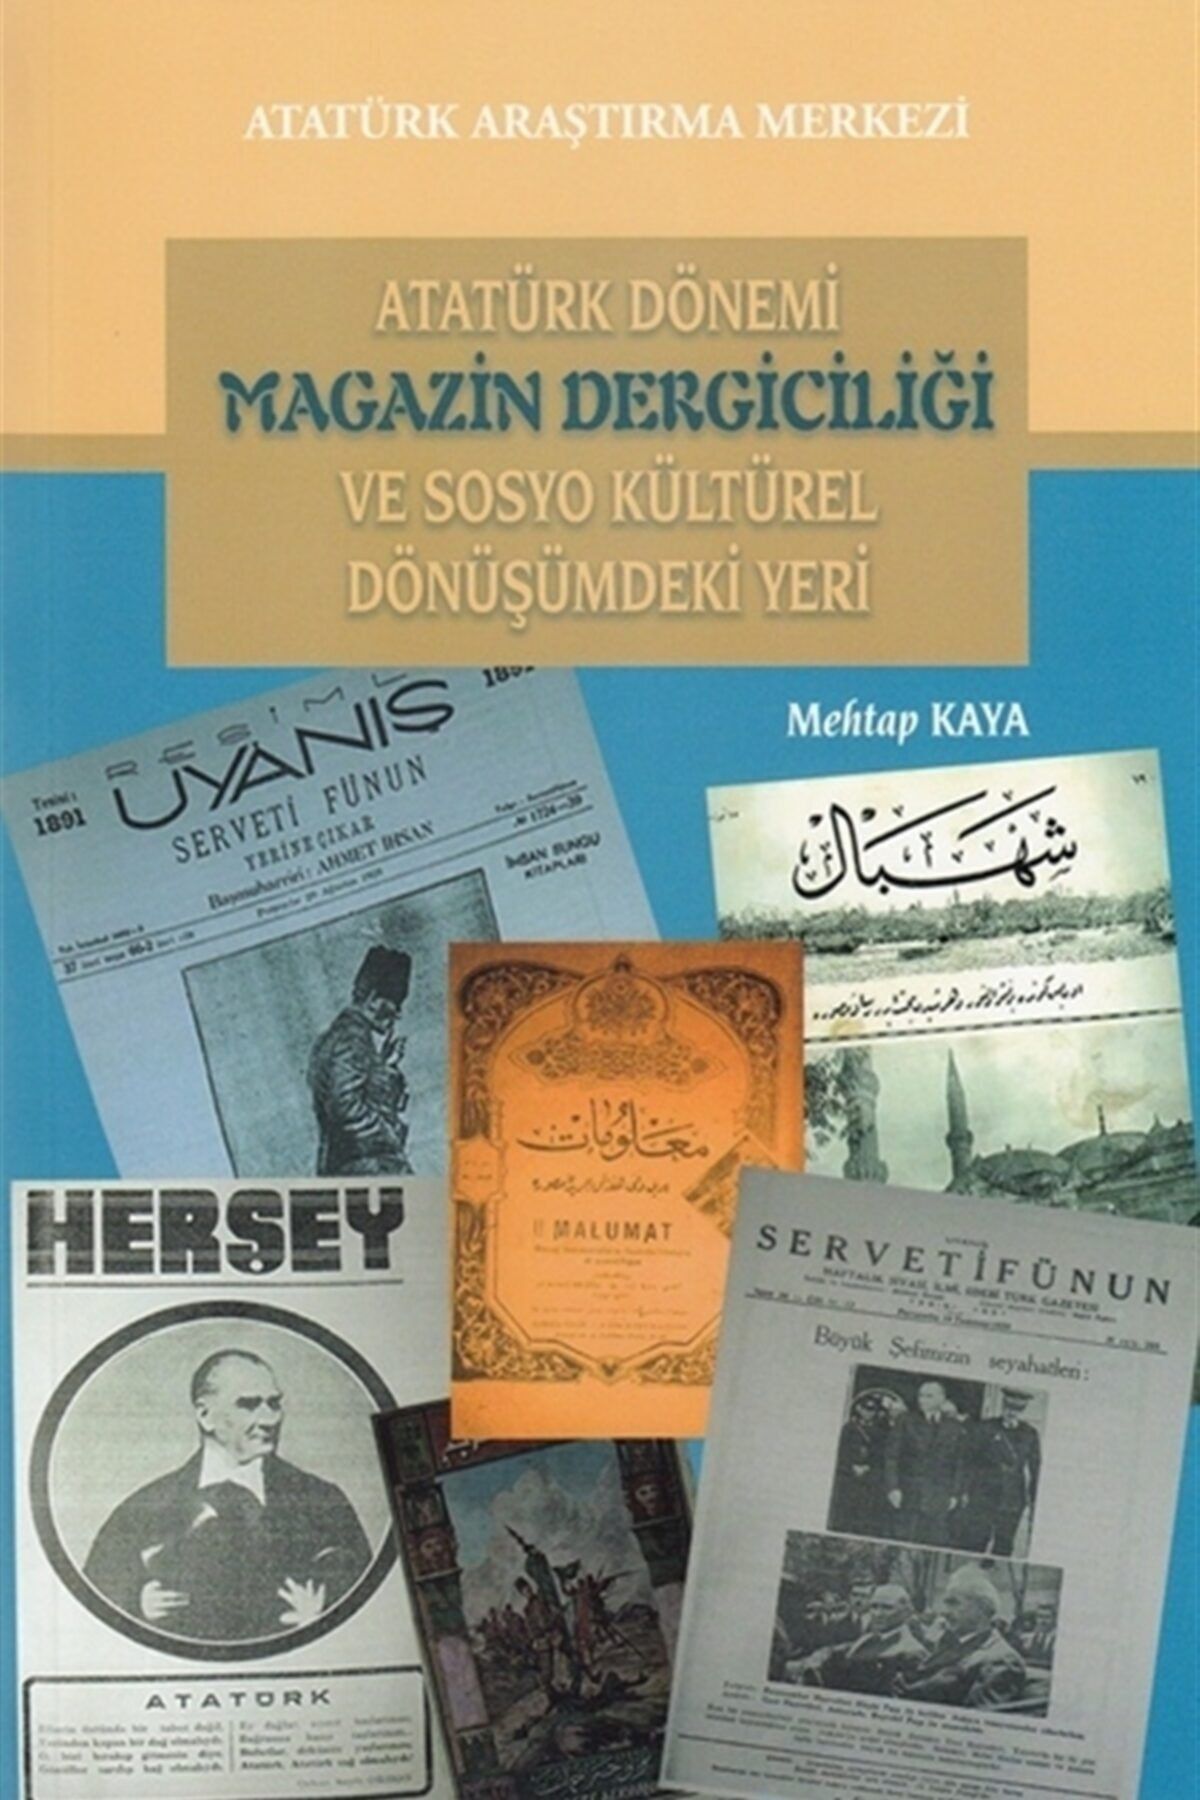 Atatürk Araştırma Merkezi Atatürk Dönemi Magazin Dergiciliği Ve Sosyo Kültürel Dönüşümdeki Yeri